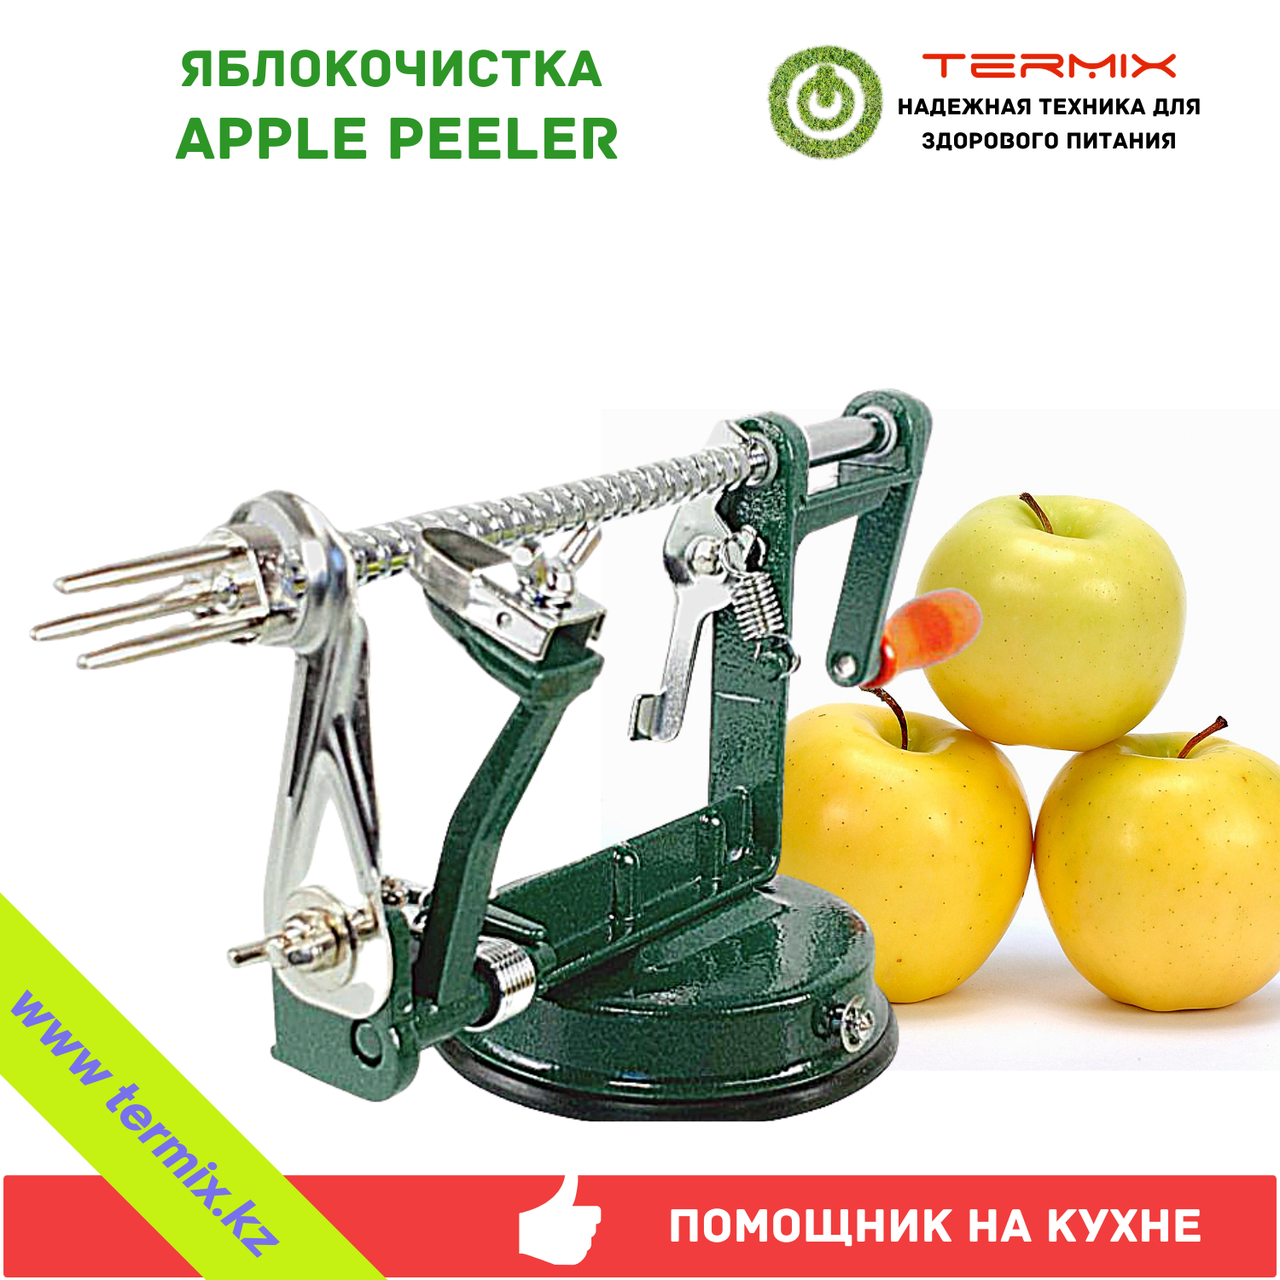 Apple Peeler - Слайсер для нарезки яблок, фруктов и овощей с присоской, зеленый